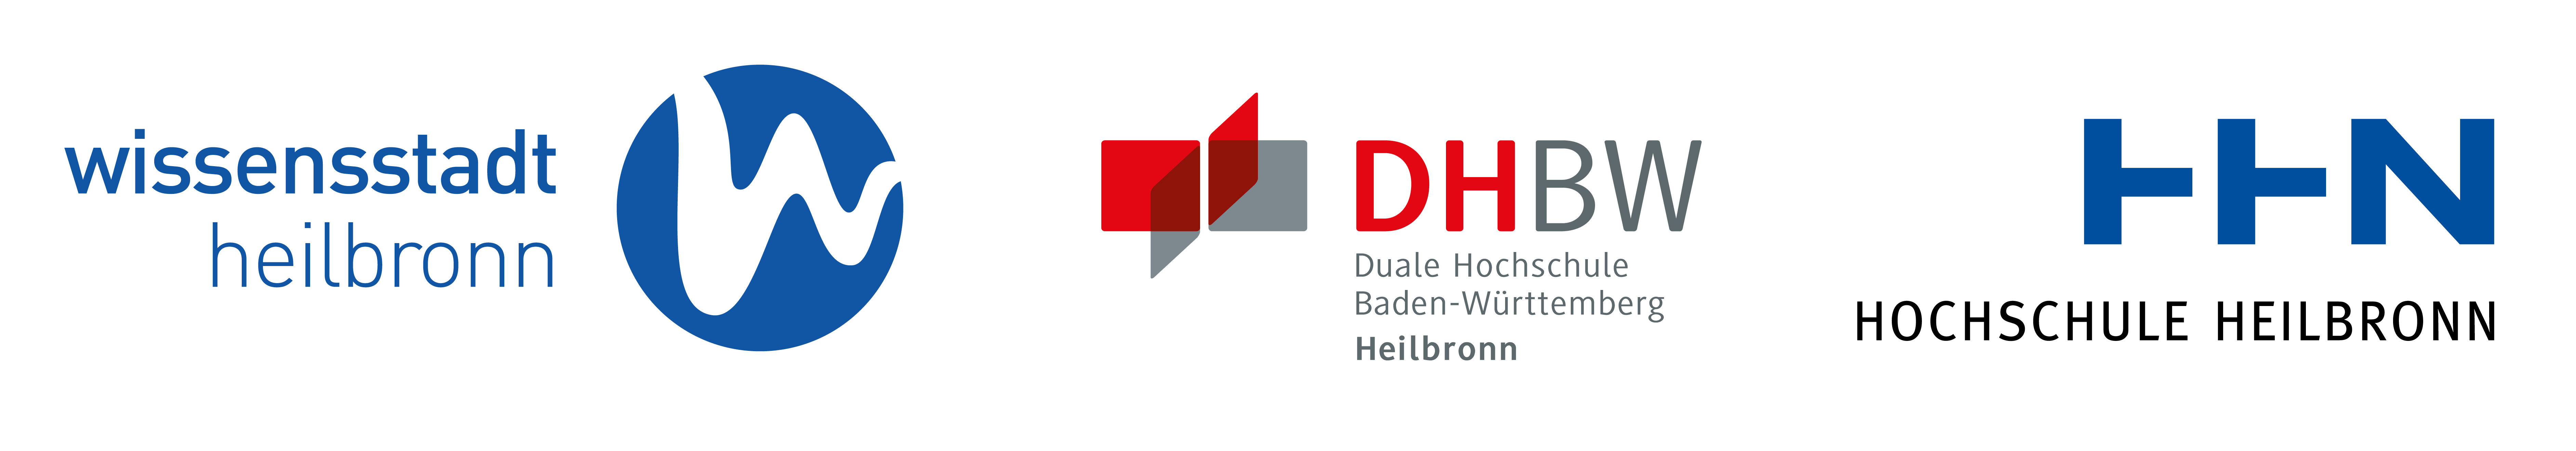 Logo DHBW Heilbronn Hochschule Heilbronn Wissensstadt